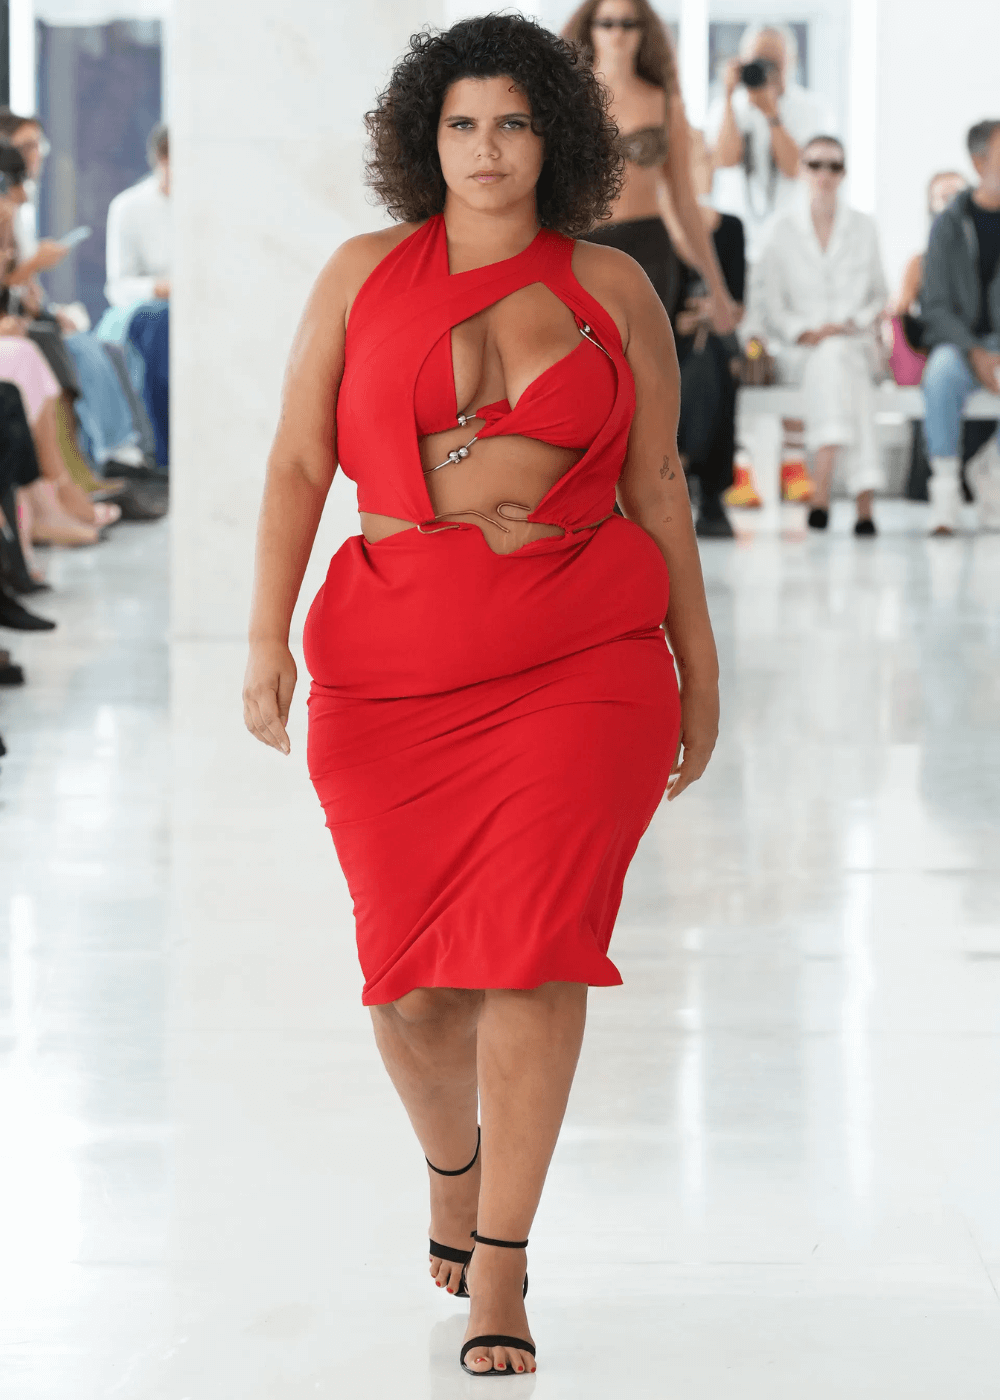 Karoline Vitto SS24 - vestido cut-out vermelho - modelos plus size - primavera - modelo plus size andando na passarela - https://stealthelook.com.br